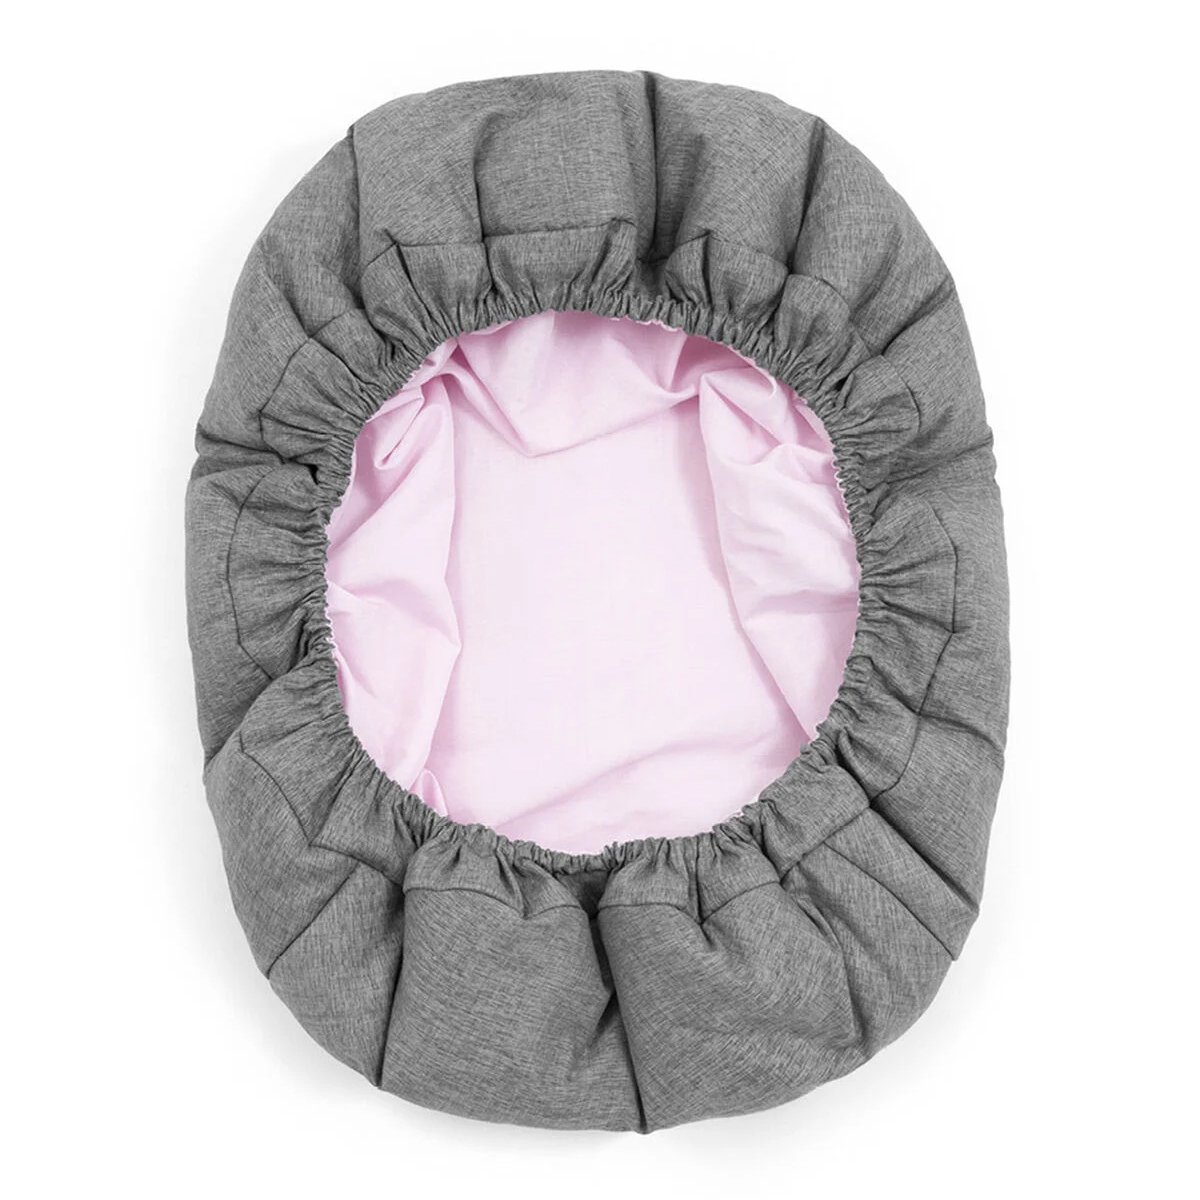 Шезлонг для новорожденного Stokke Nomi Newborn Set Grey/Grey Pink (625903) - фото 5